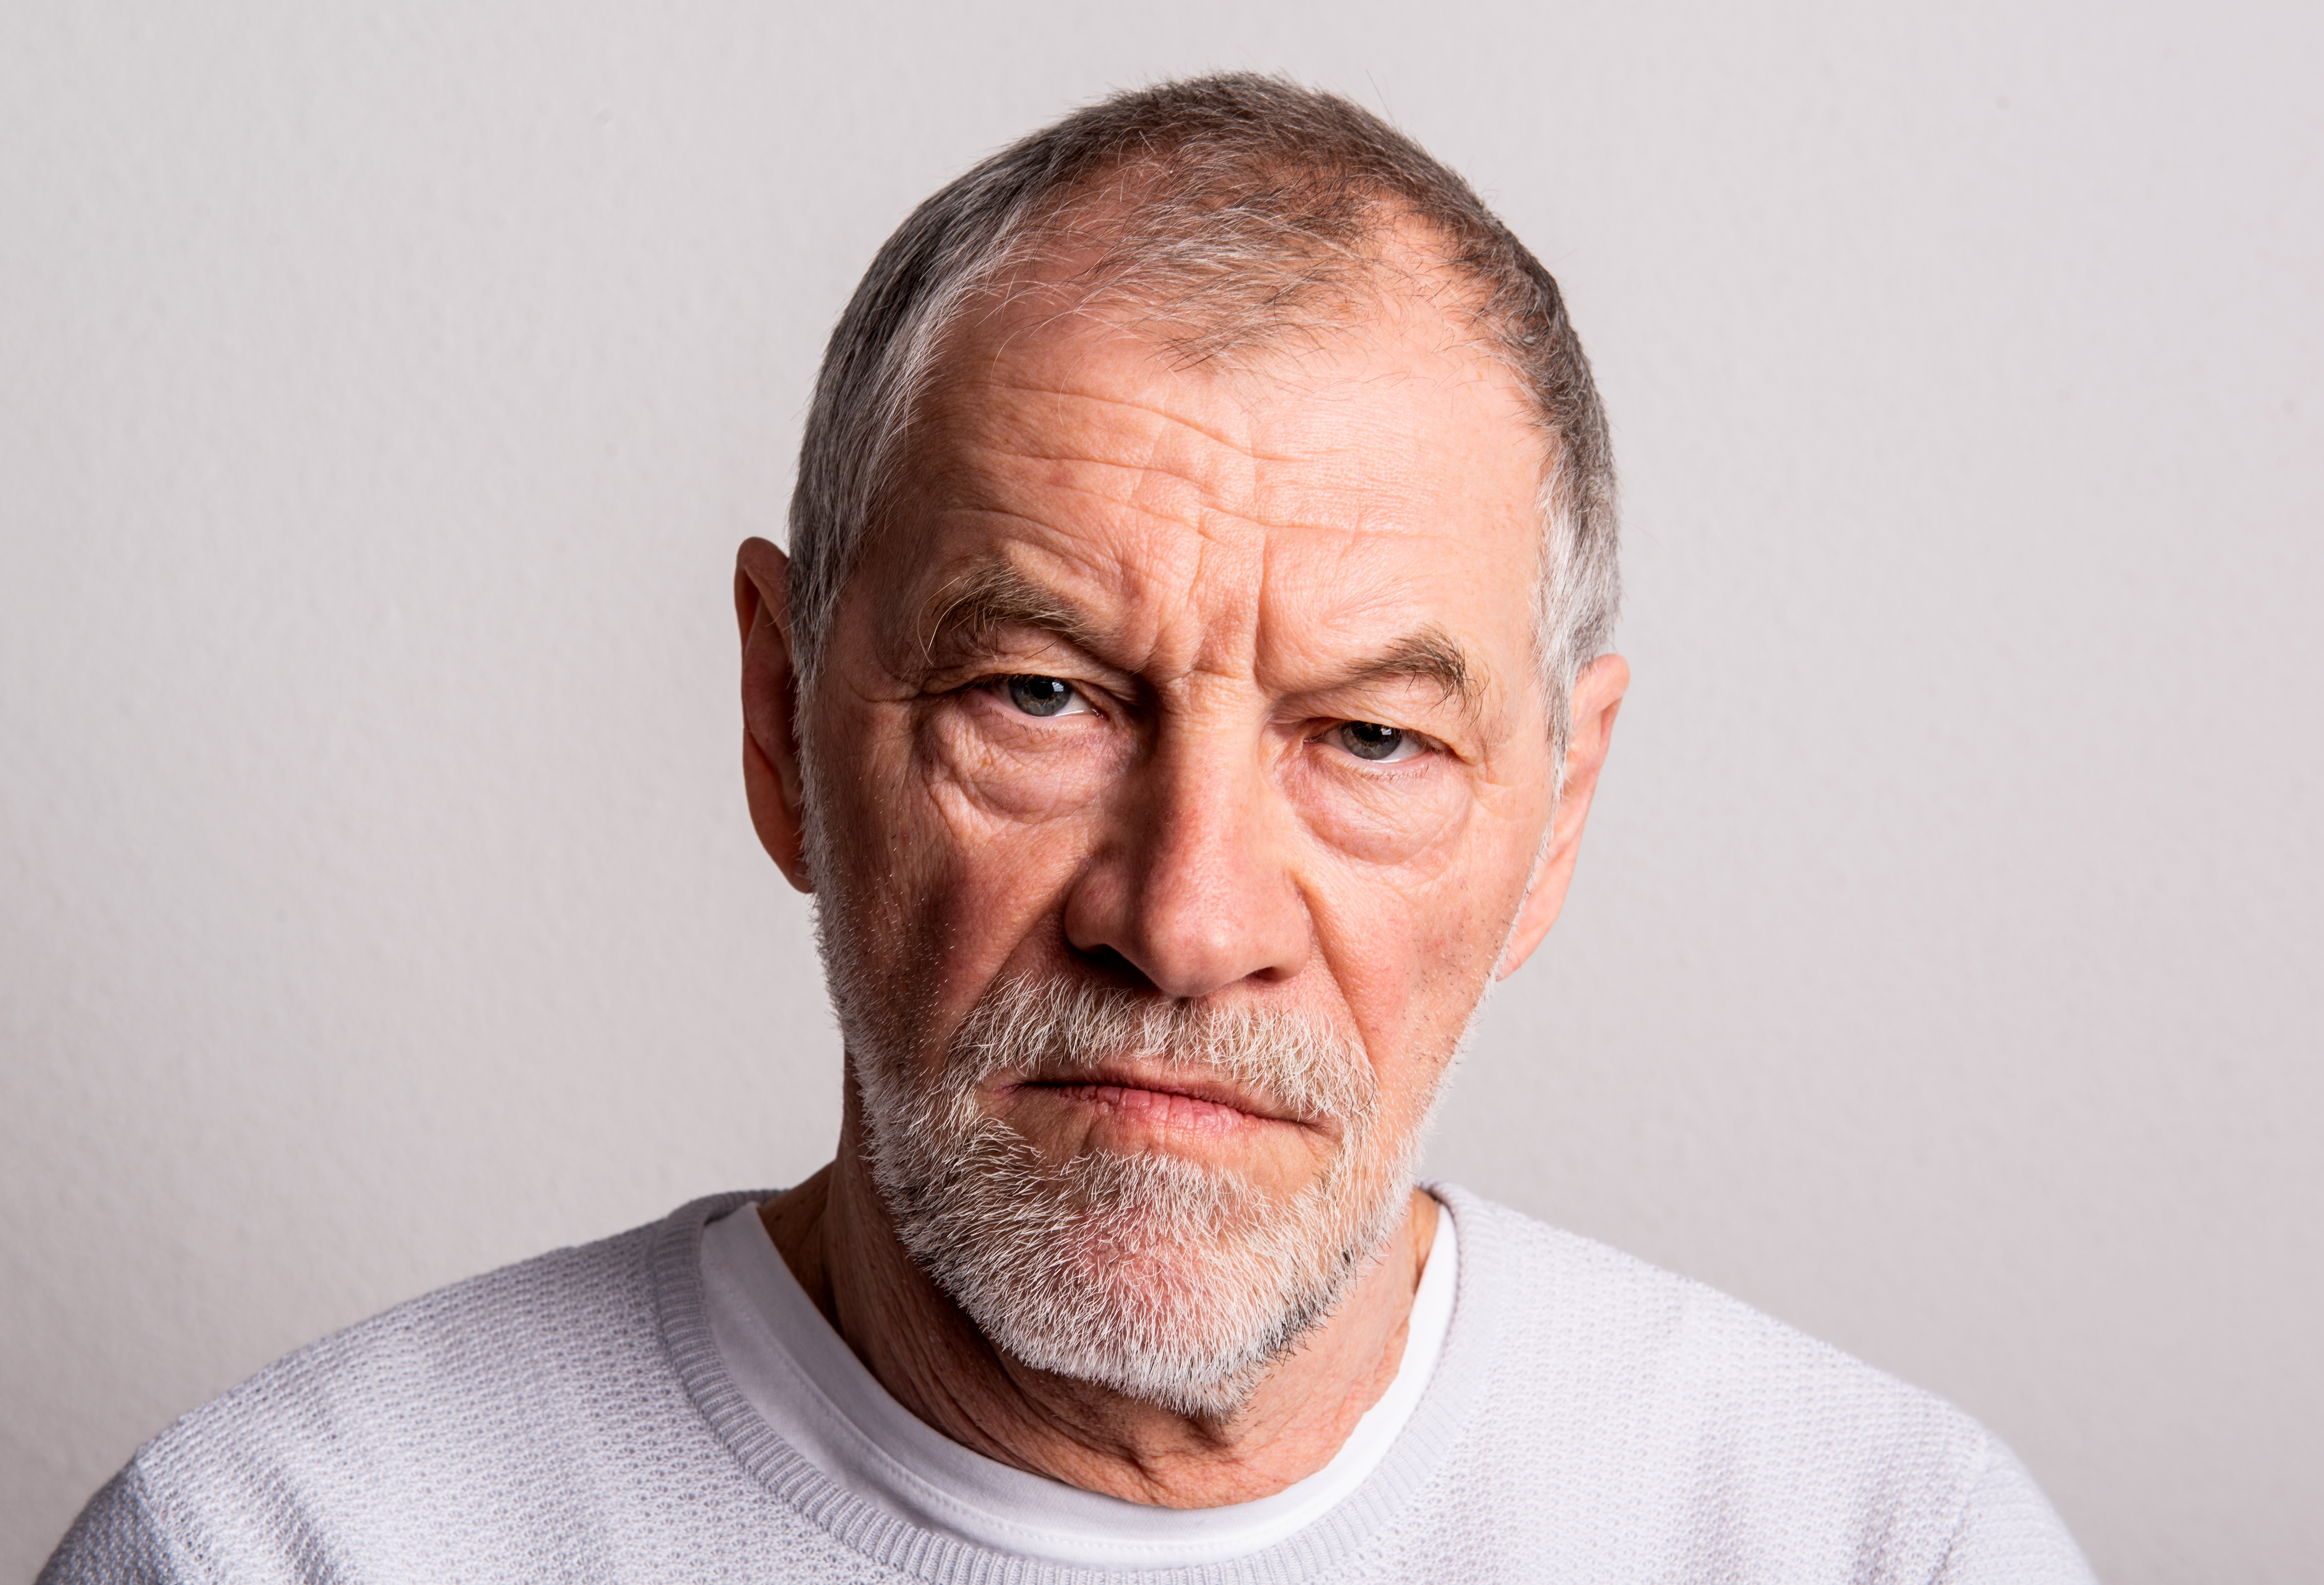 Retrato de un hombre mayor serio | Fuente: Shutterstock